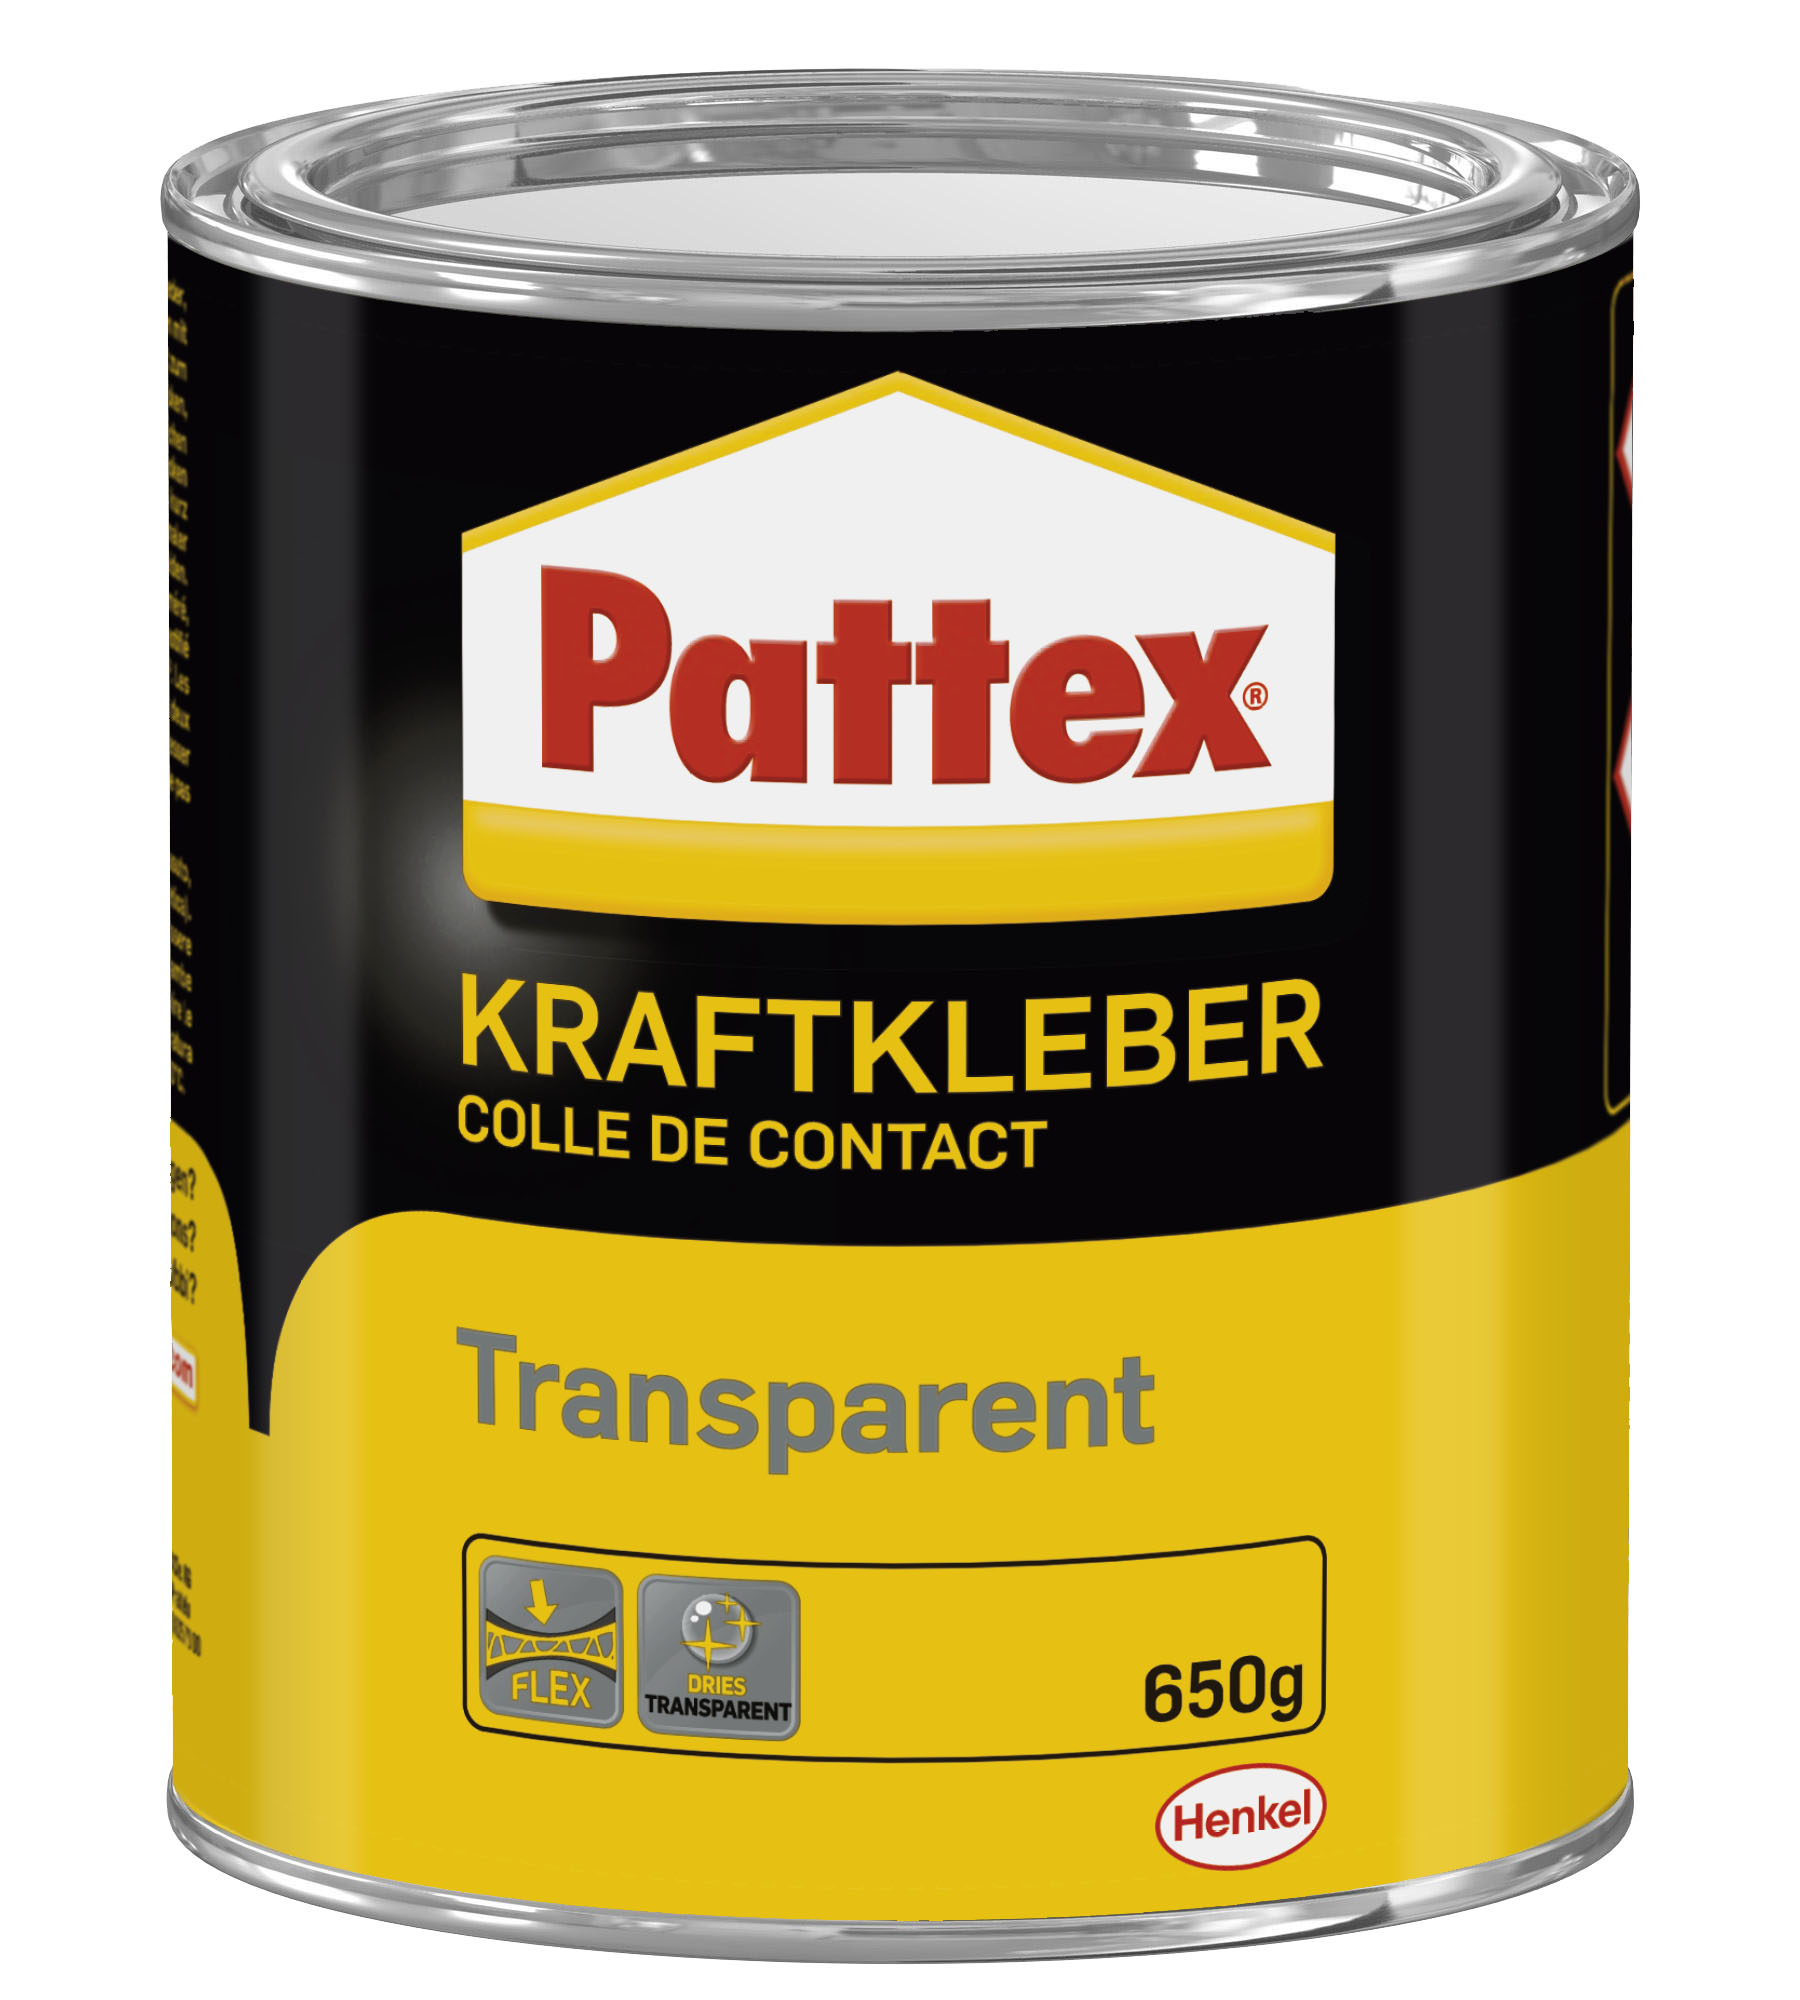 Pattex Kraftkleber Gel Compact, 625g